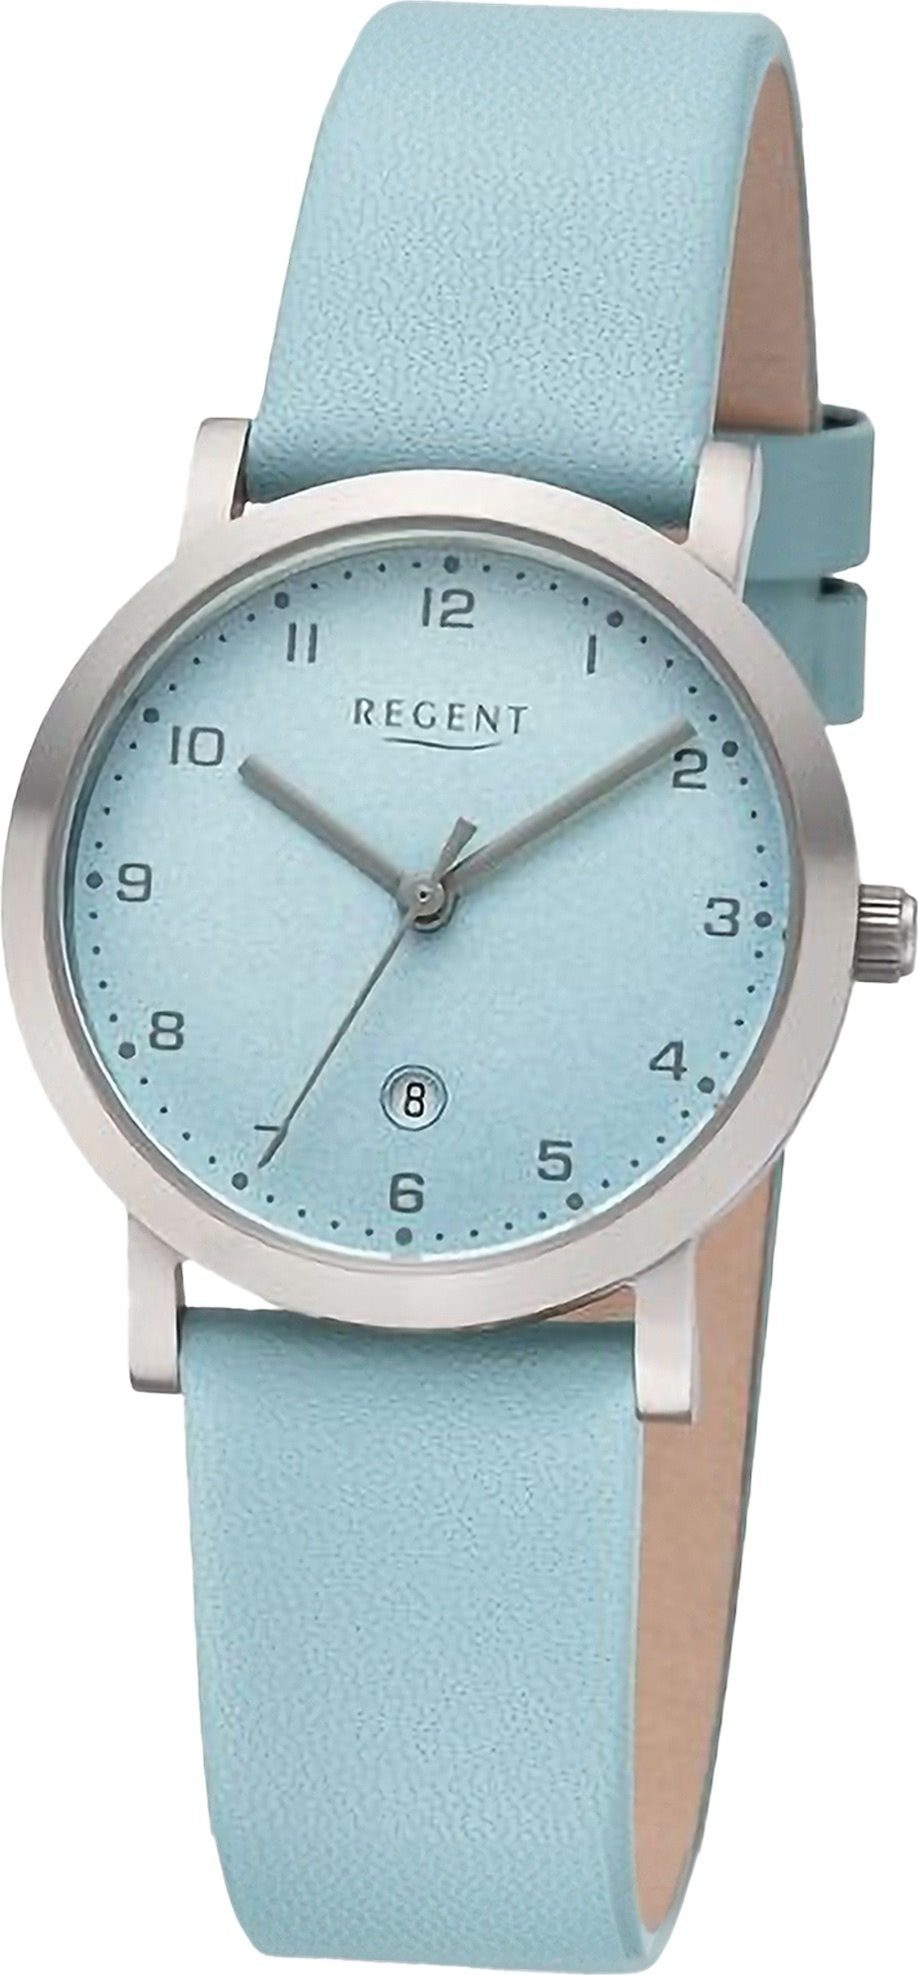 Regent Quarzuhr Regent Damen Armbanduhr Analog, Damenuhr Lederarmband hellblau, rundes Gehäuse, extra groß (ca. 30mm)